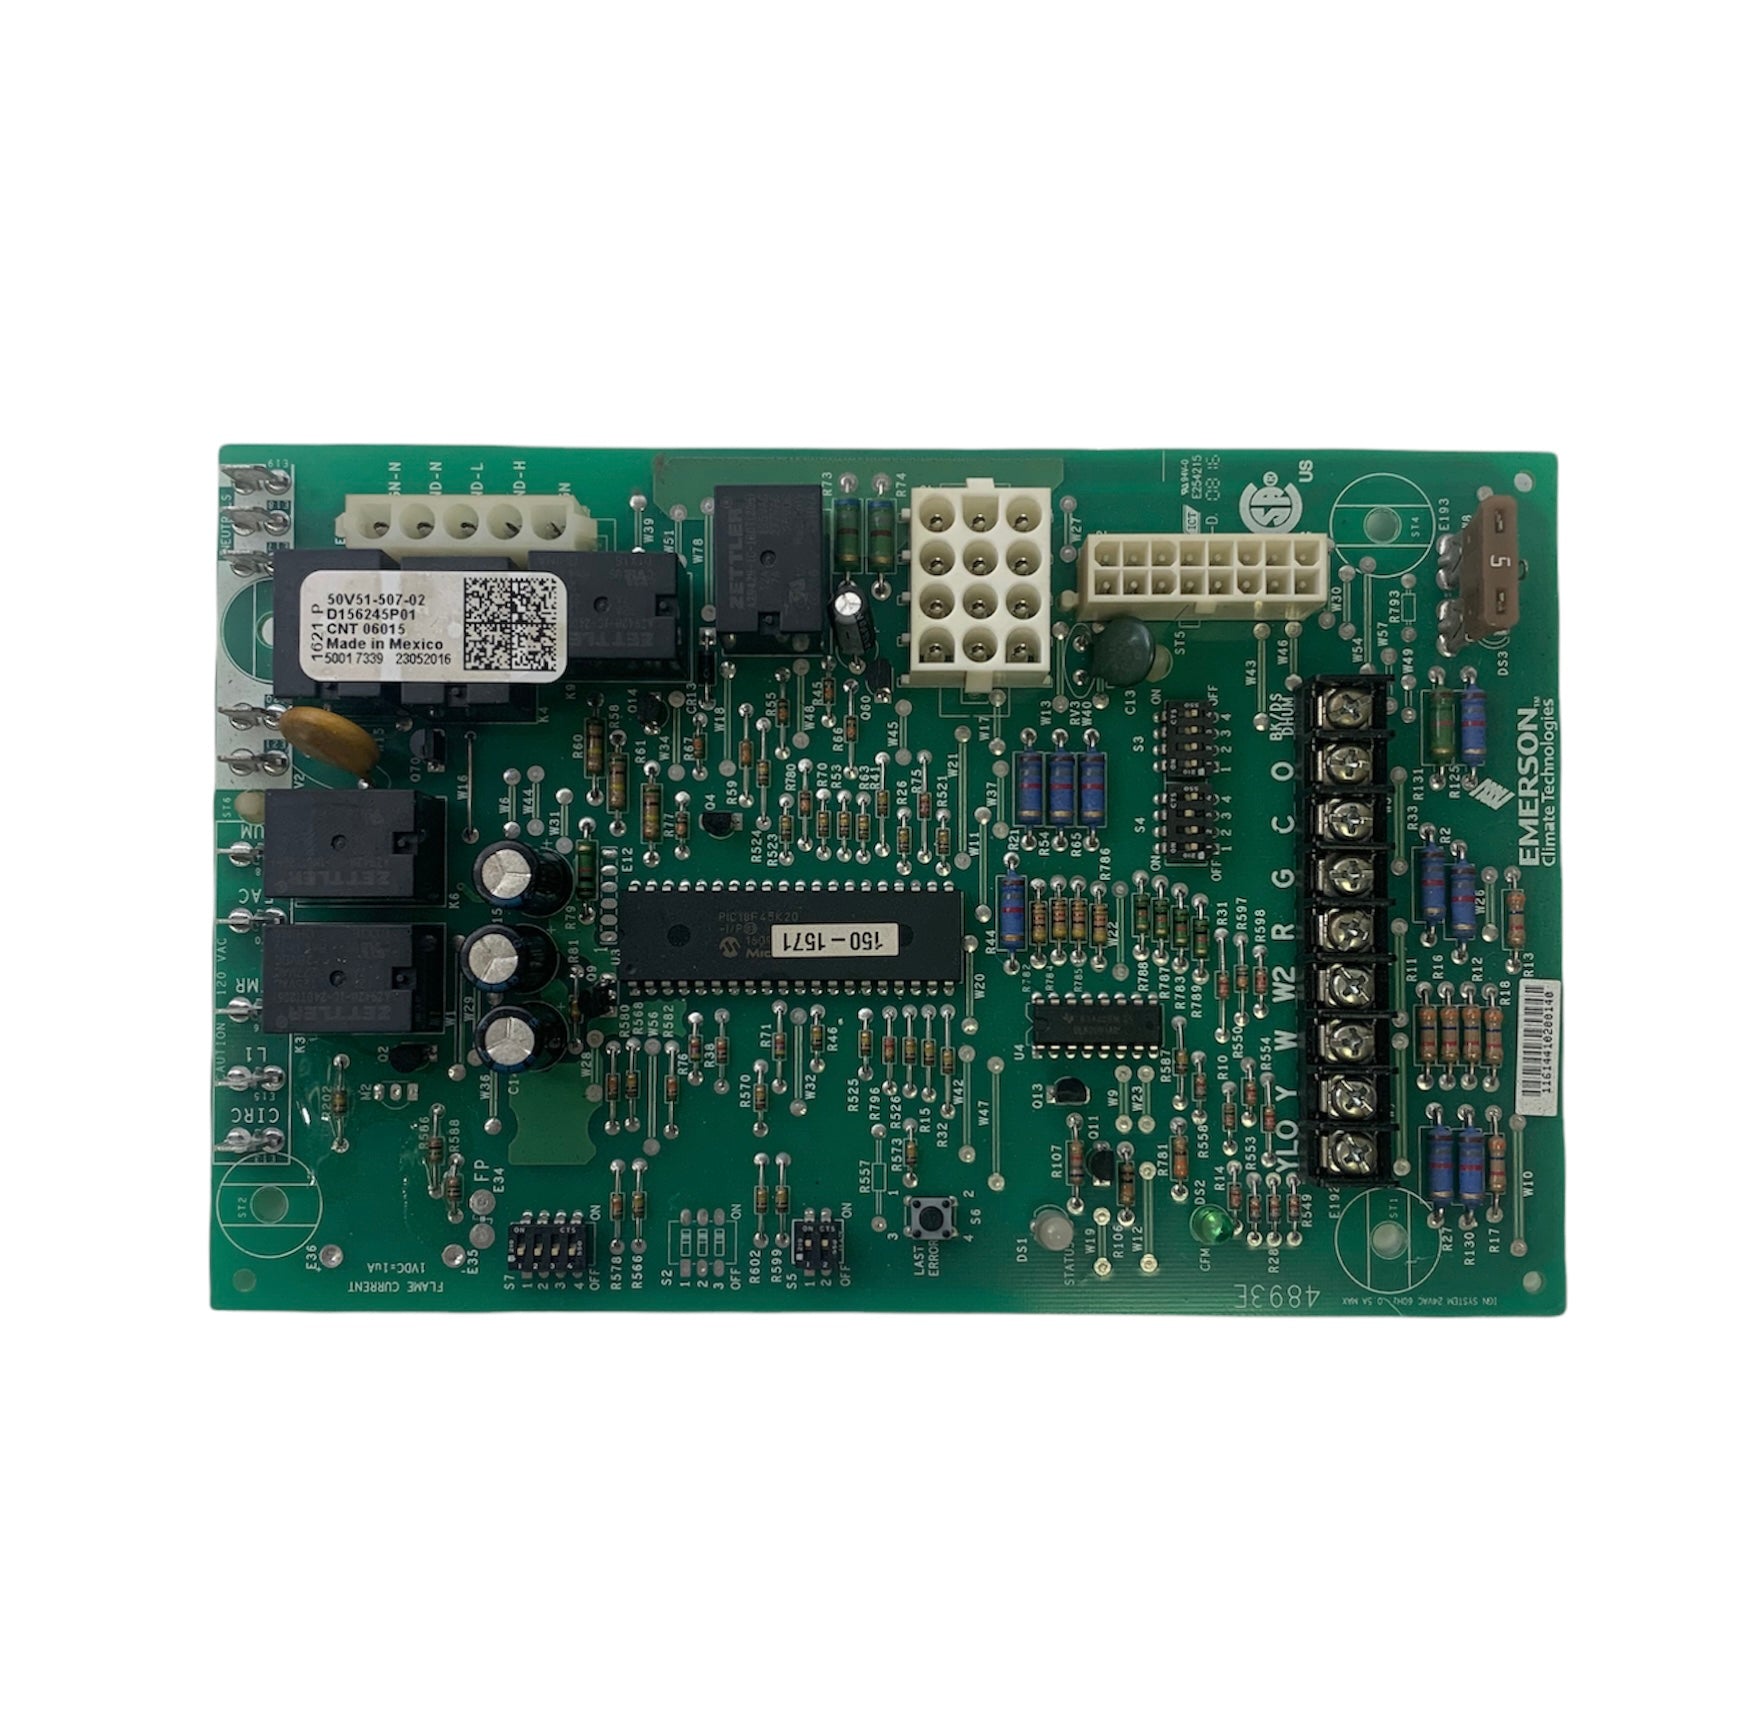 Trane American Standard D156245P01 (50V51-507-02) Furnace Control Board